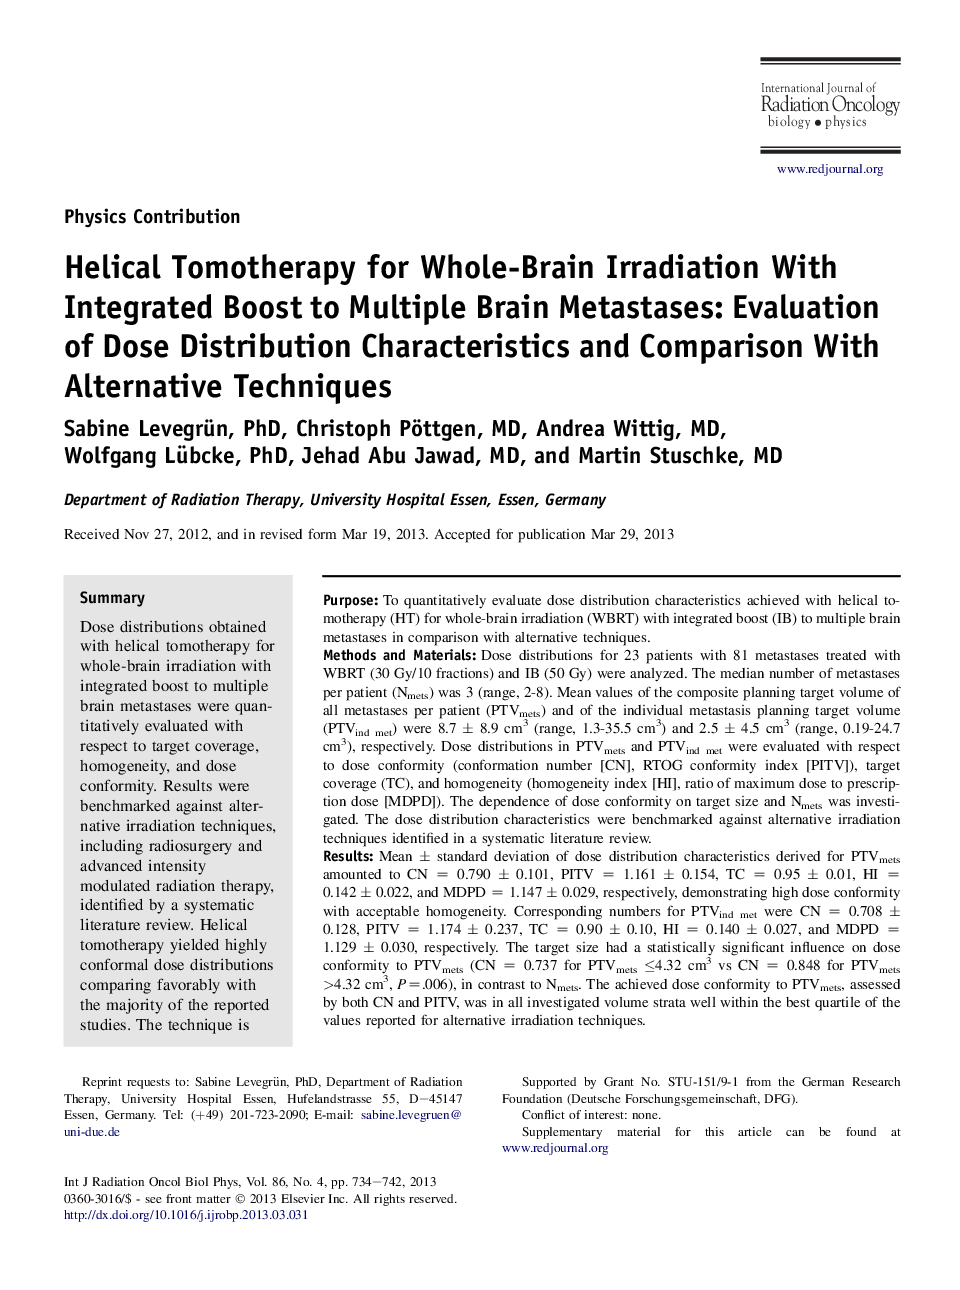 تاموتراپی اسپیلتای پرتودهی کامل مغز با افزایش مجتمع متاستازهای مختلف مغز: ارزیابی ویژگی های توزیع دوز و مقایسه آن با تکنیک های جایگزین 